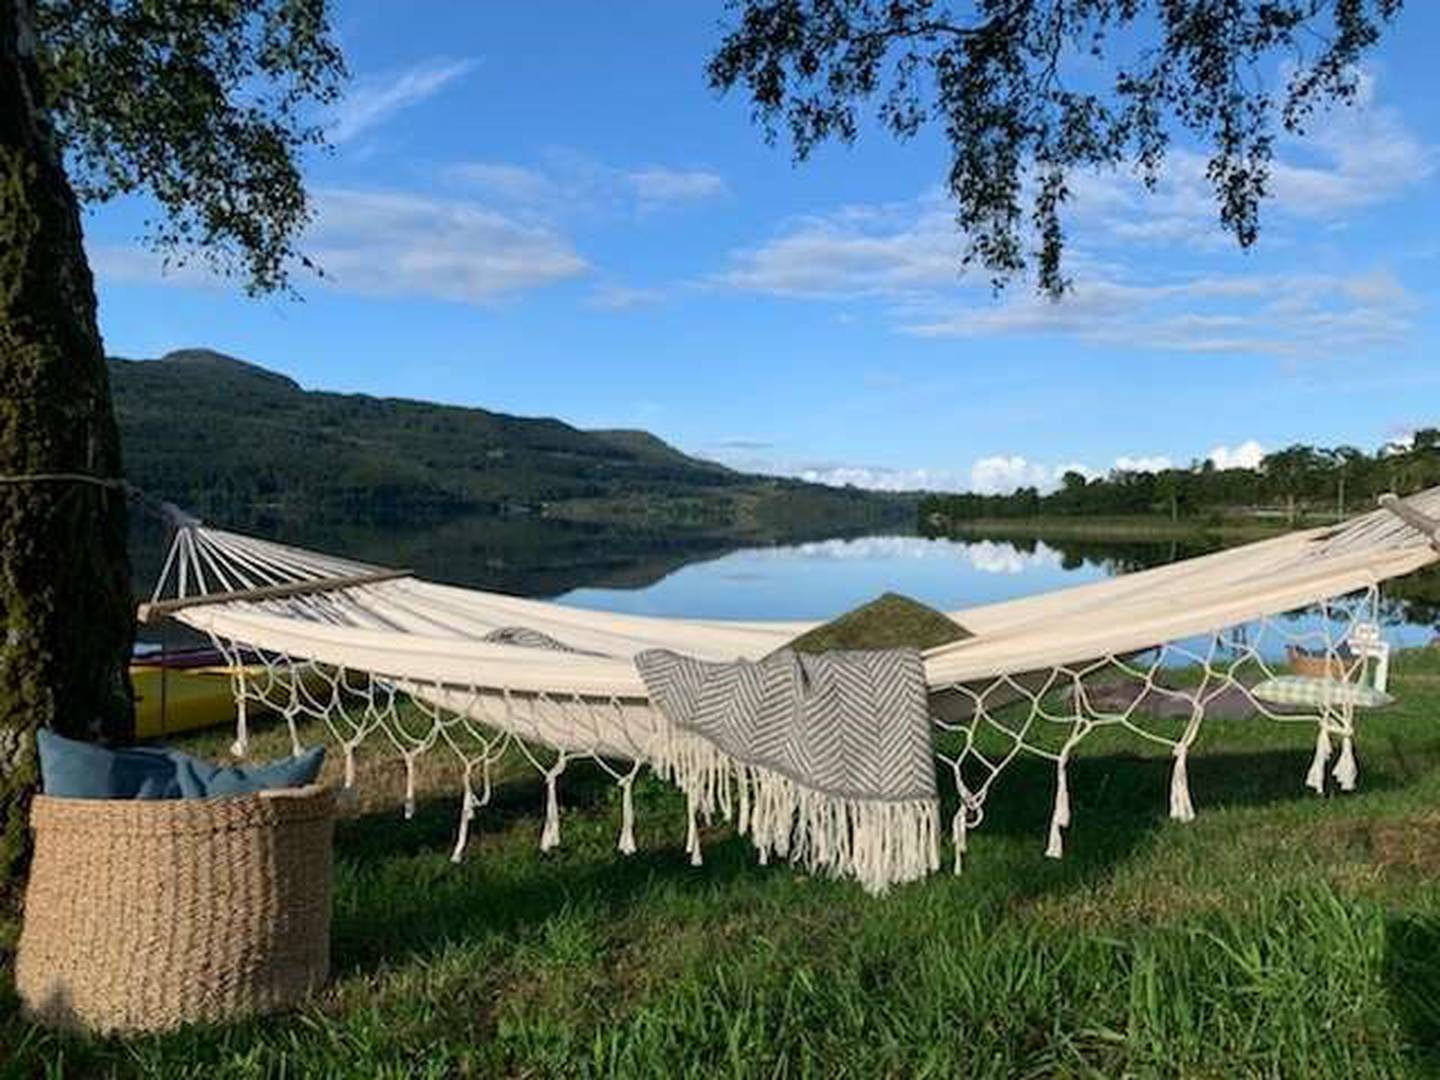 Fjell, fjord, lavere temperaturer og lite trafikk er noe av det som får utlendinger til å kjøpe seg hytter og feriehus i Norge. Bildet er fra Bjørheimsbygd i Ryfylke.